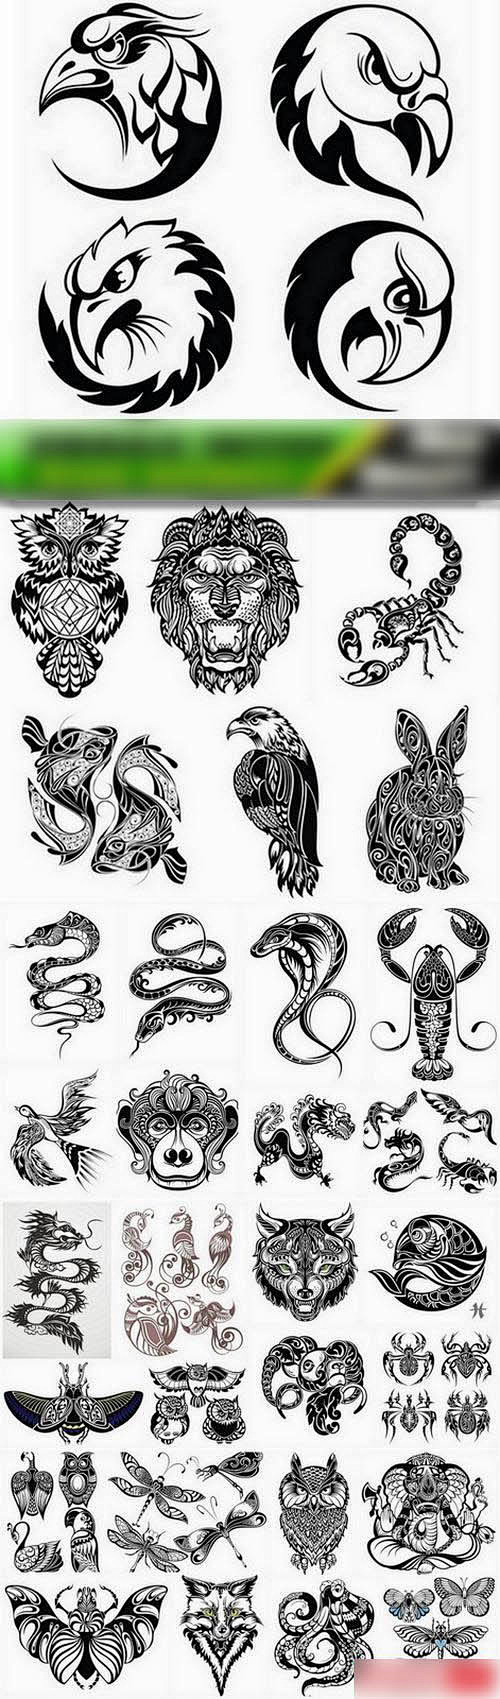 抽象的动物纹身图腾图案eps矢量图设计素材31p2016012226淘宝网